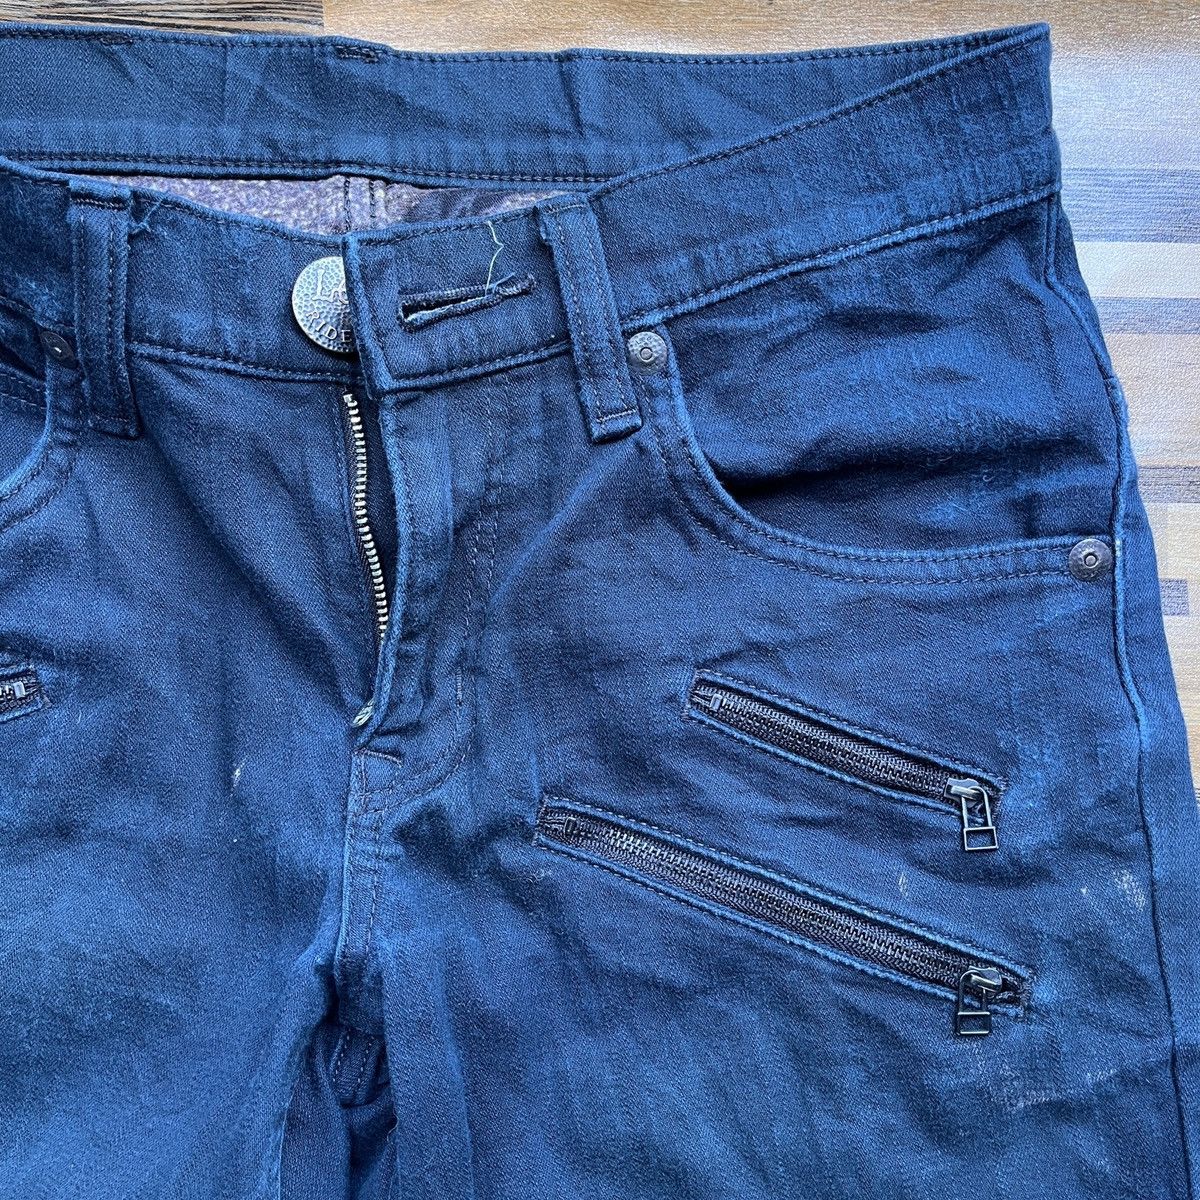 Multipocket Lee Rider Denim Jeans Vintage - 11